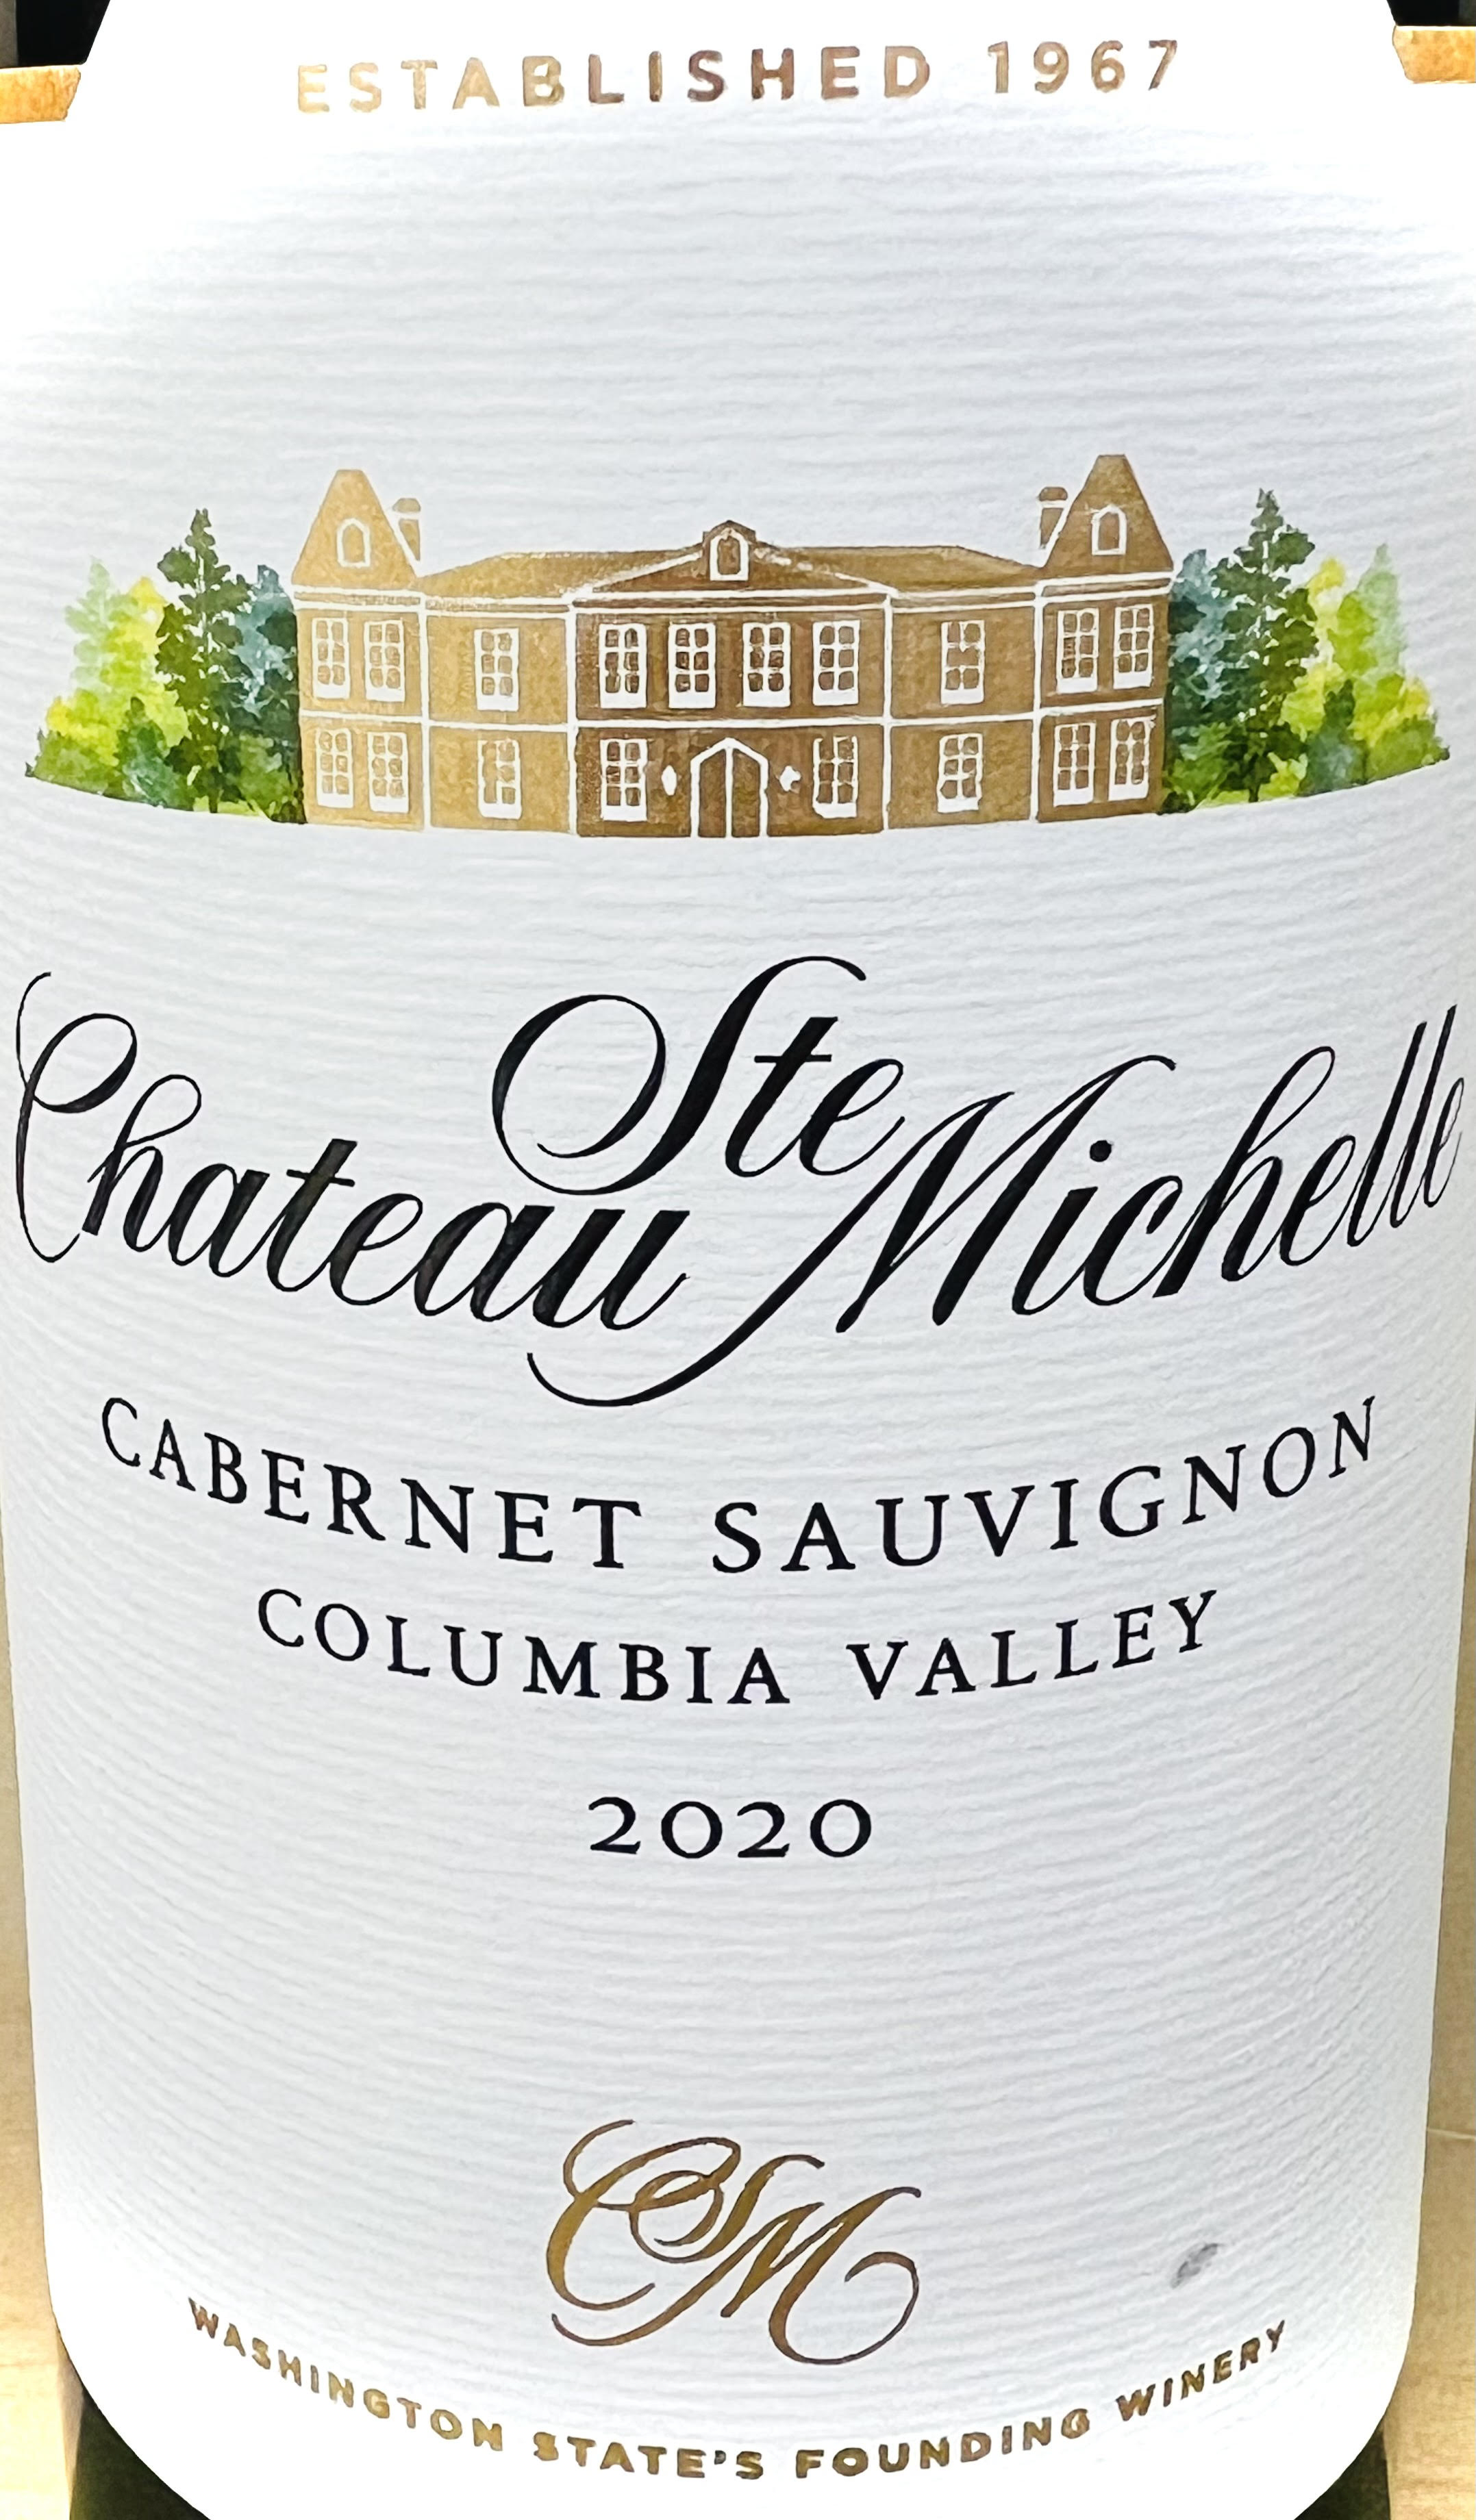 Chateau Ste.Michelle Cabernet Sauvignon Columbia Valley 2020